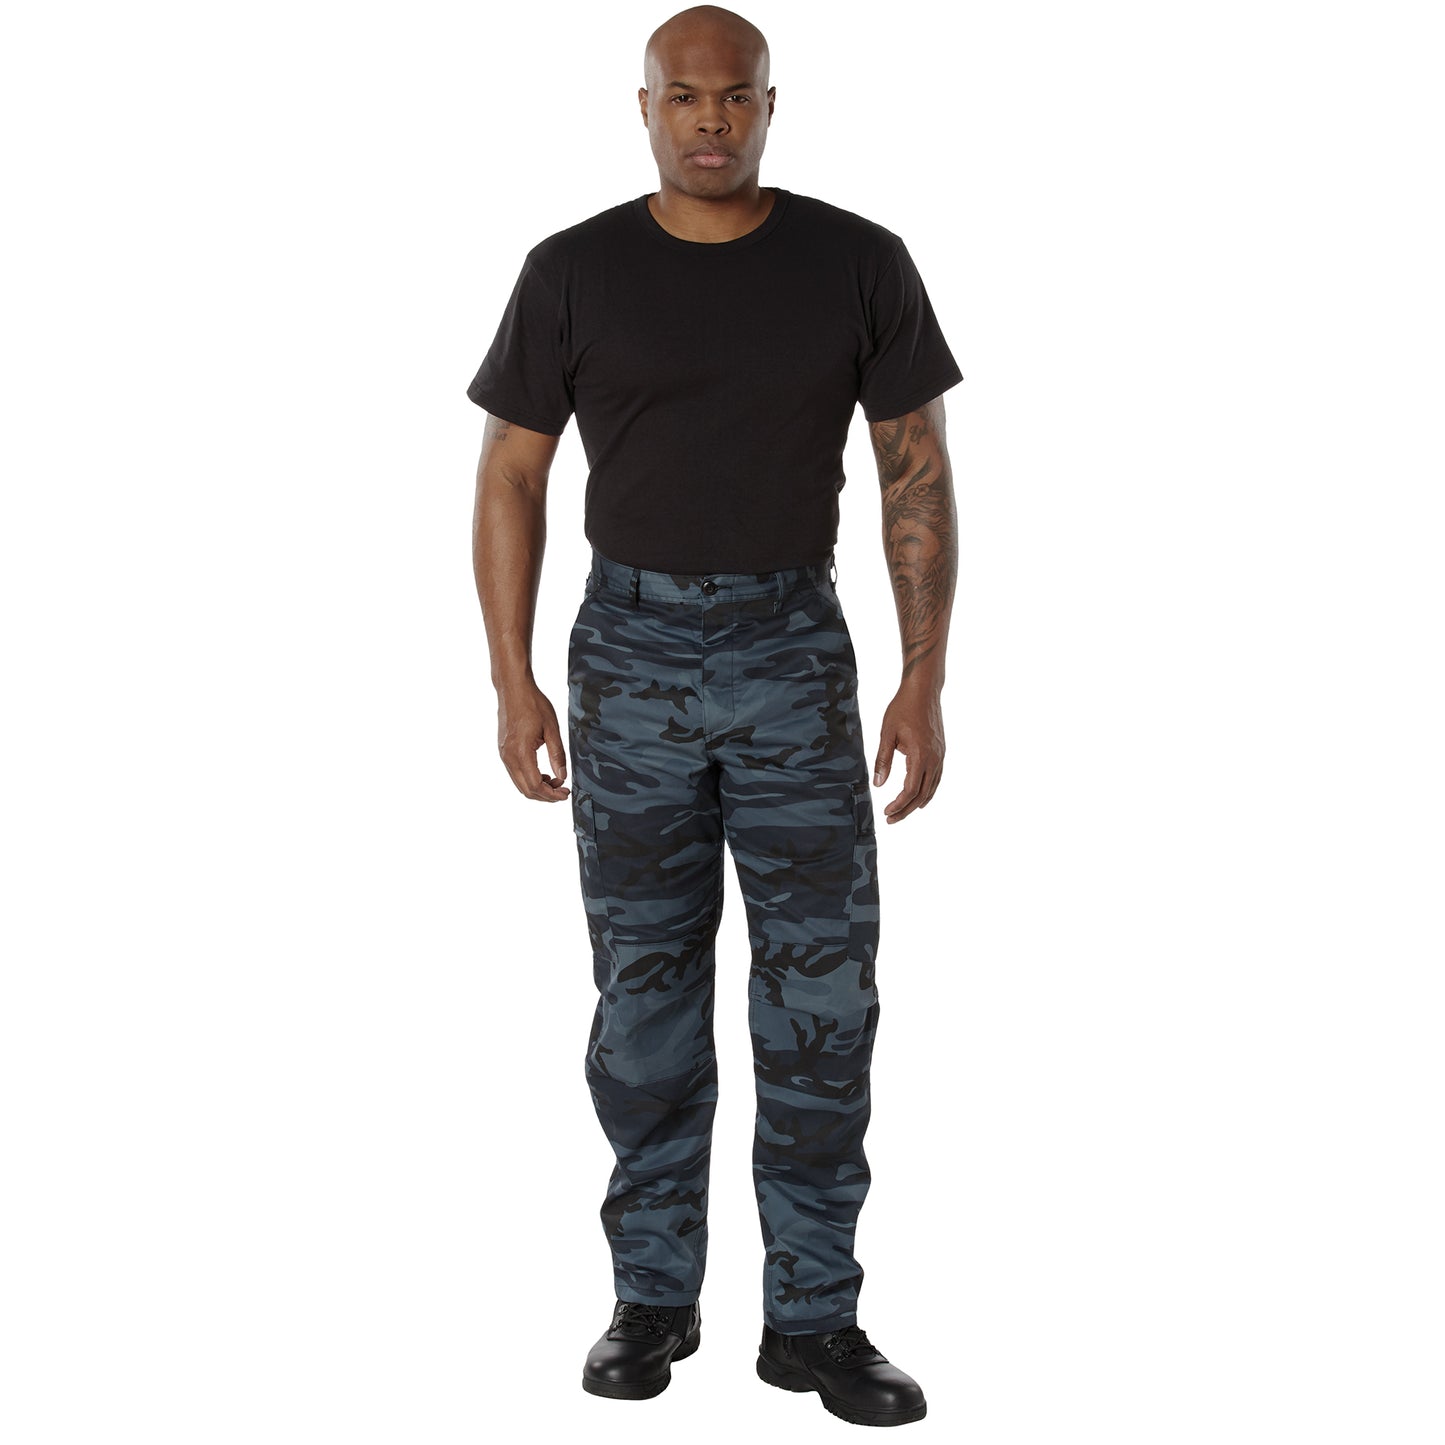 Rothco Color Camo Tactical BDU Pants - Dark Blue Camo